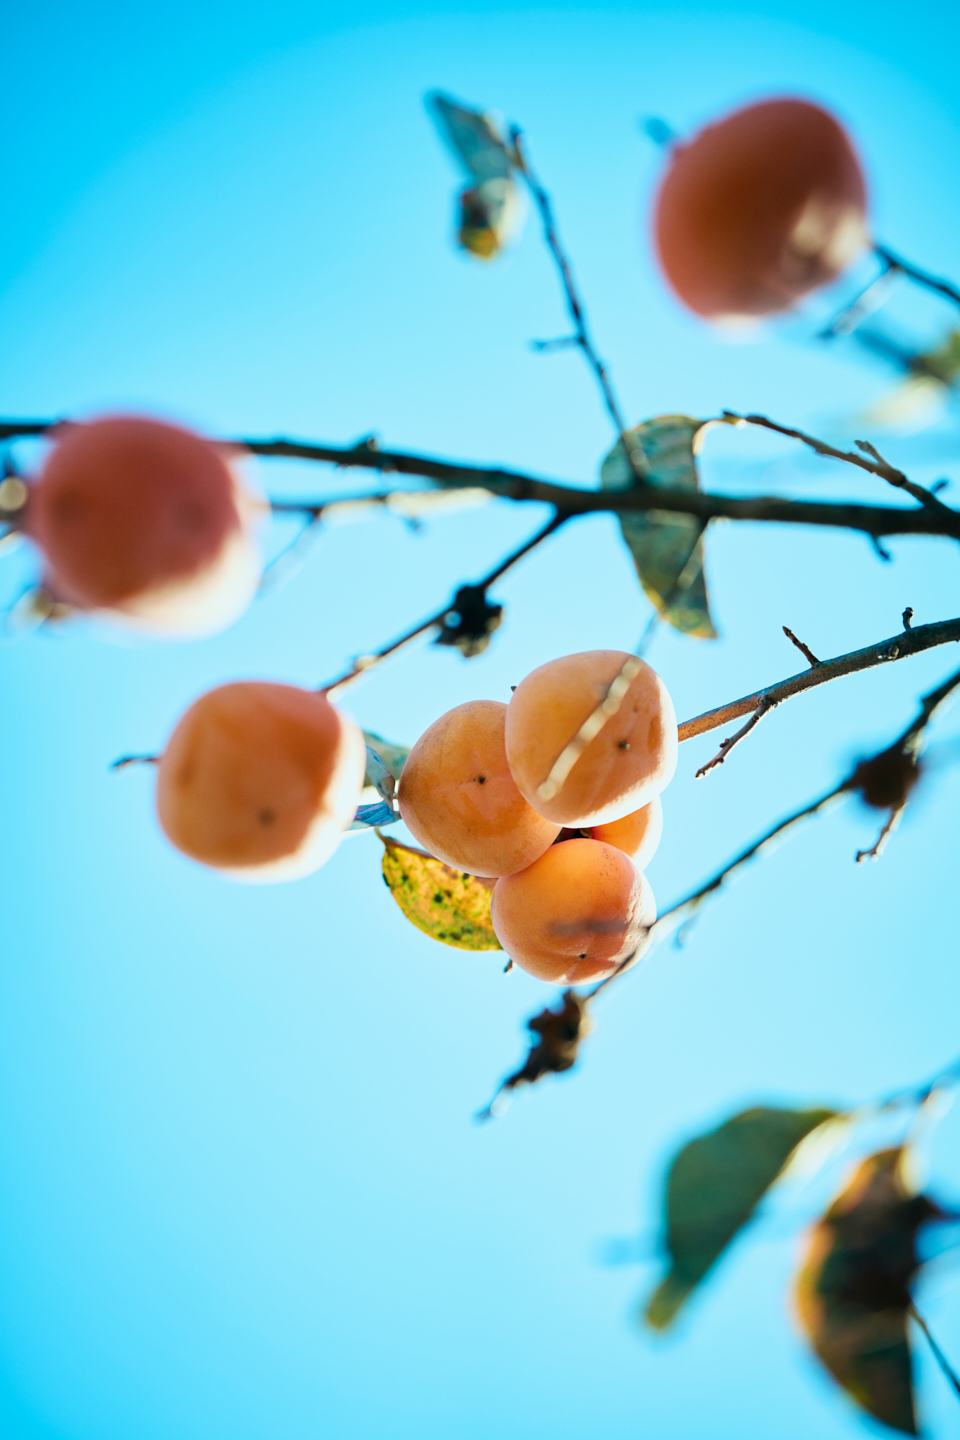 【写真】柿が実る木の枝を下からとらえた写真。背景には薄青い空が広がり、柿の実は陽光に照らされている。